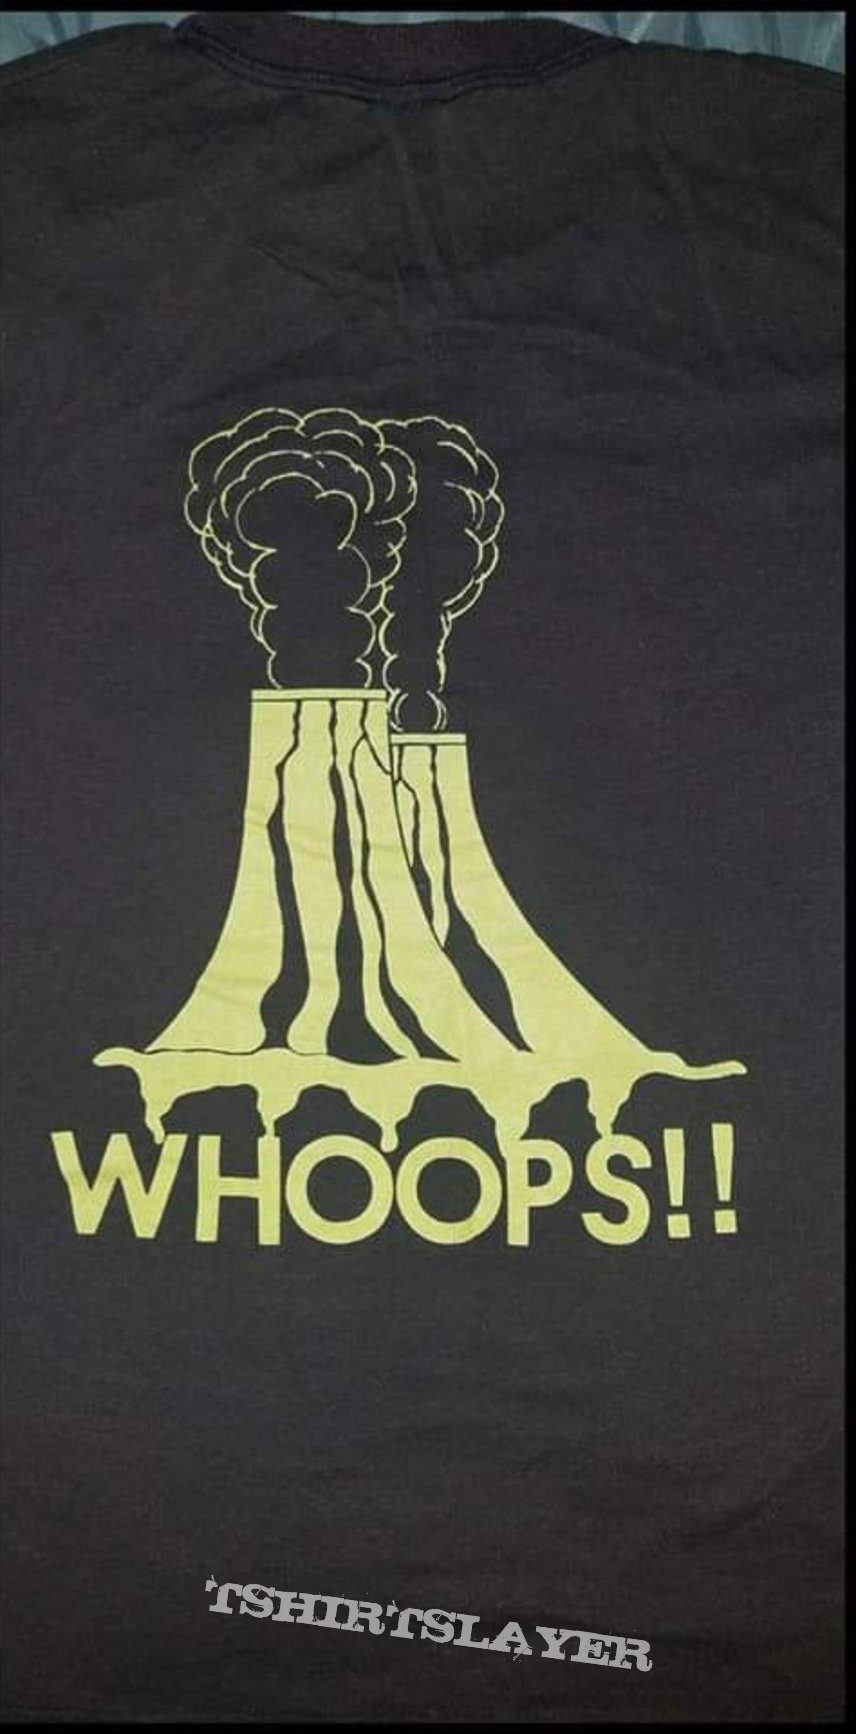 Nuclear Assault shirt